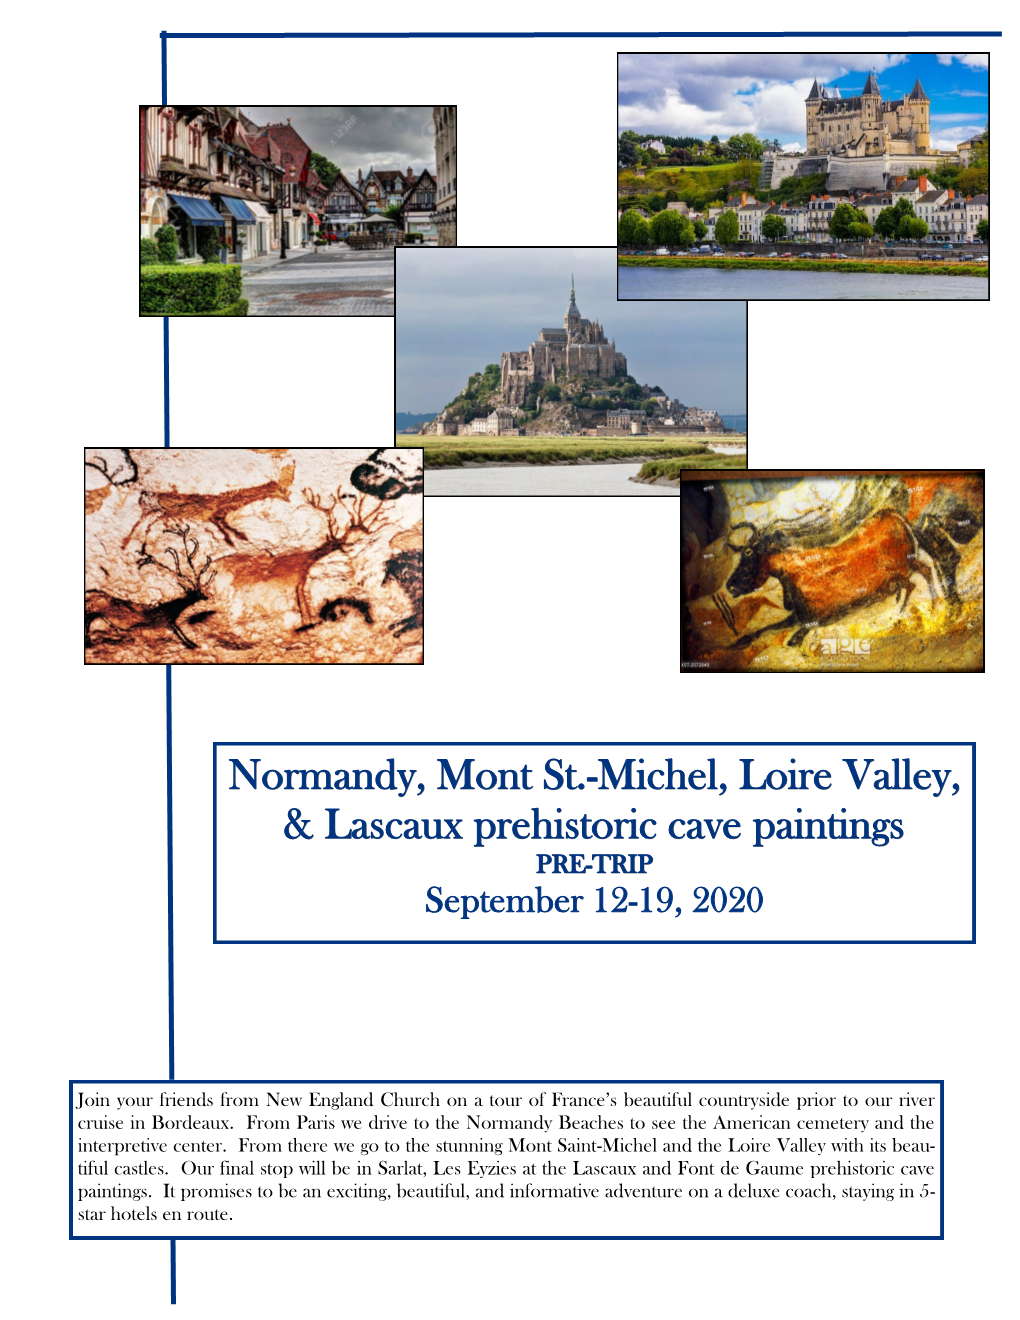 Michel, Loire Valley, & Lascaux Prehistoric Cave Paintings